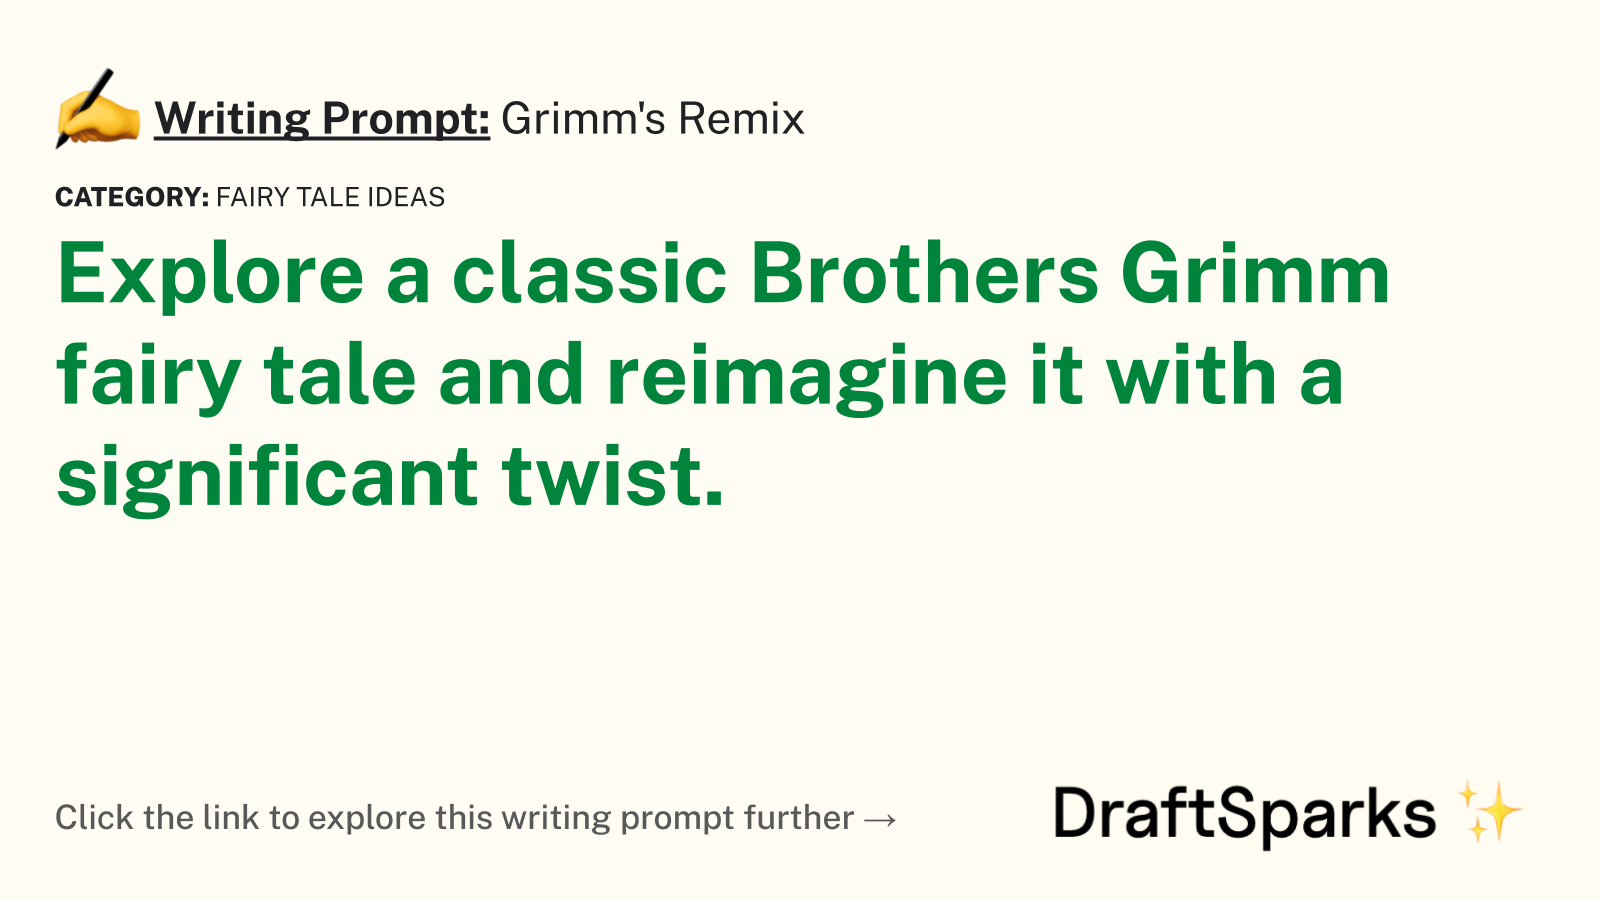 Grimm’s Remix